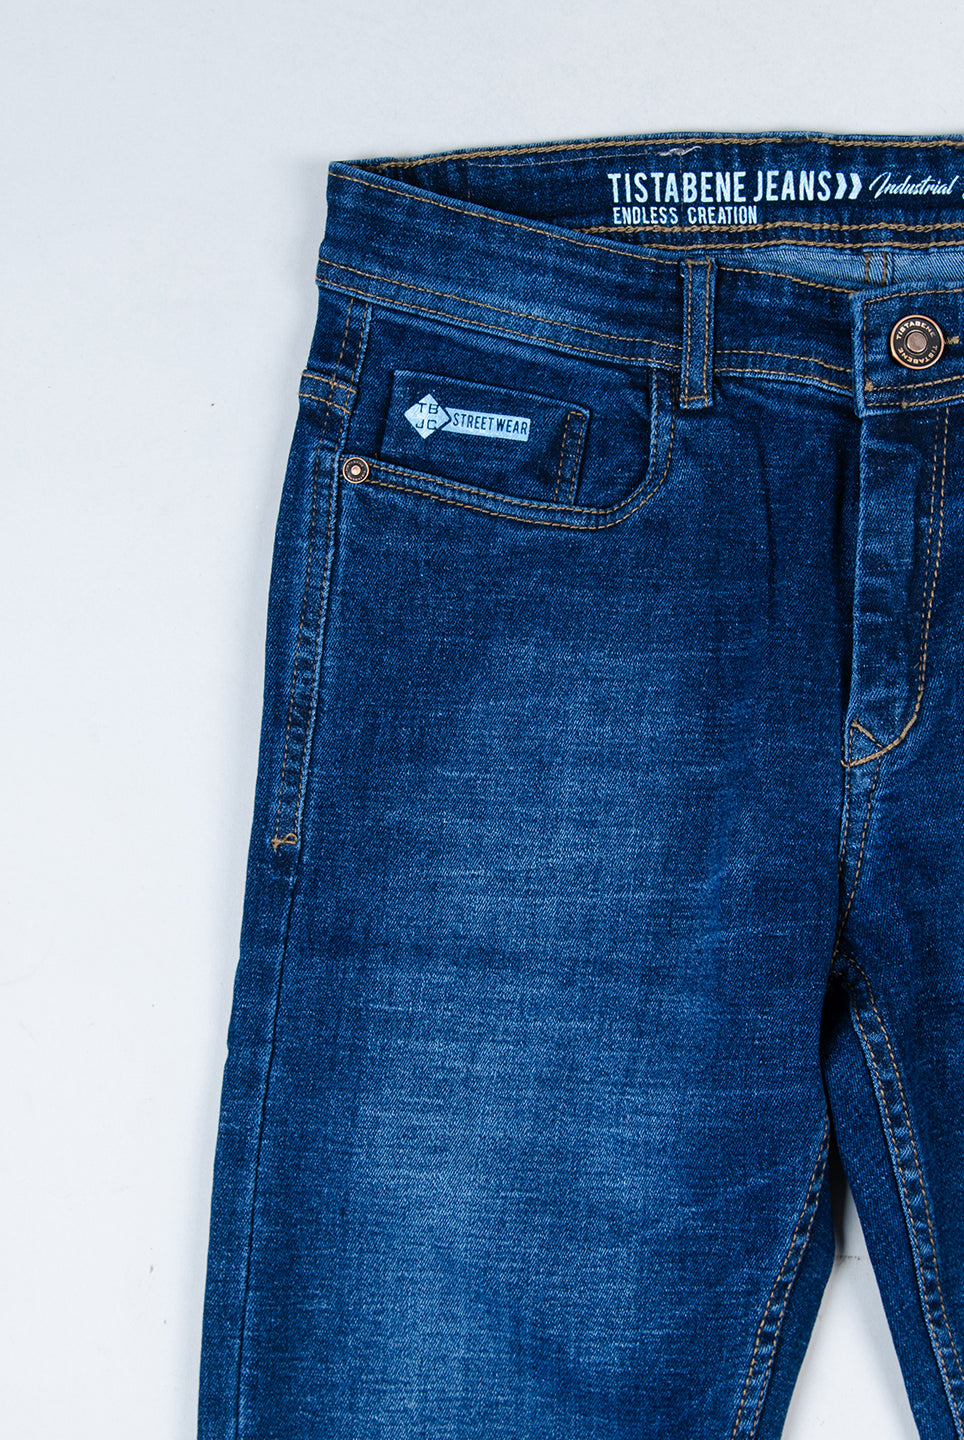 cotton denim jeans